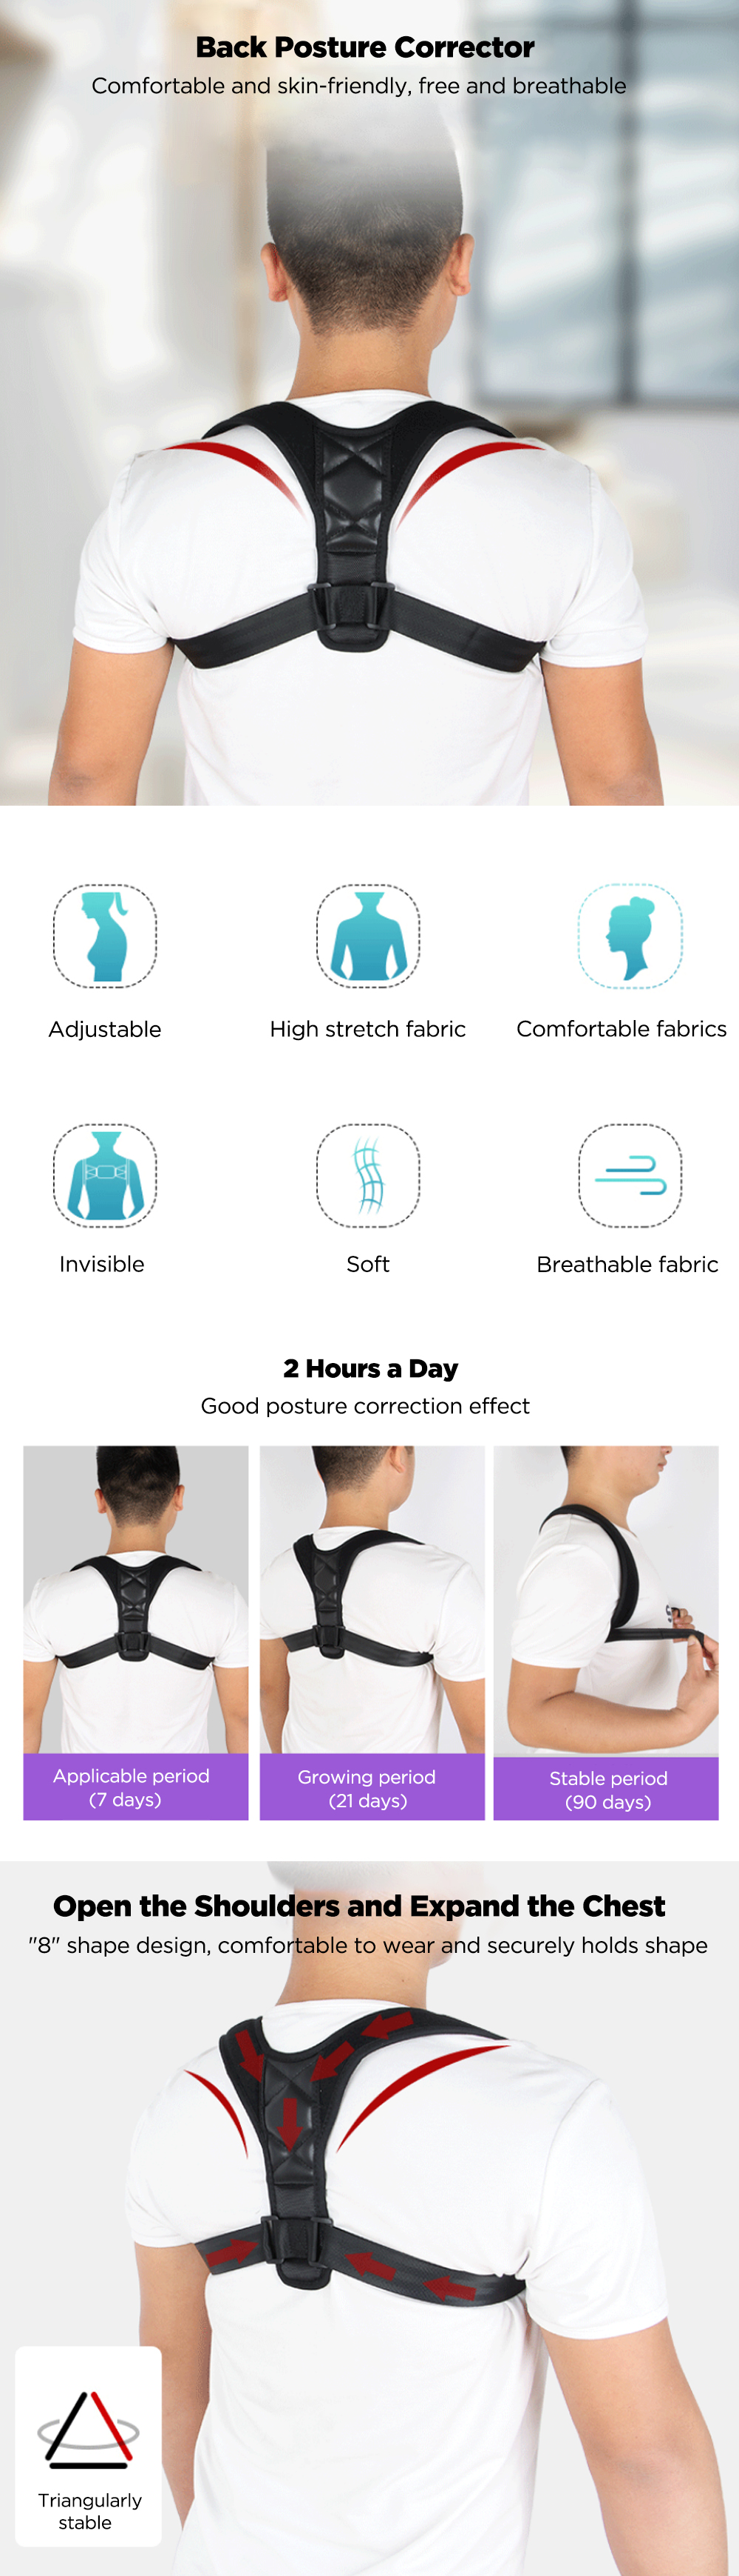 Adjustable-Back-Posture-Corrector-Spine-Corrector-Women-Men-Shoulder-Support-Therapy-Wrap-Back-Humpb-1768798-1